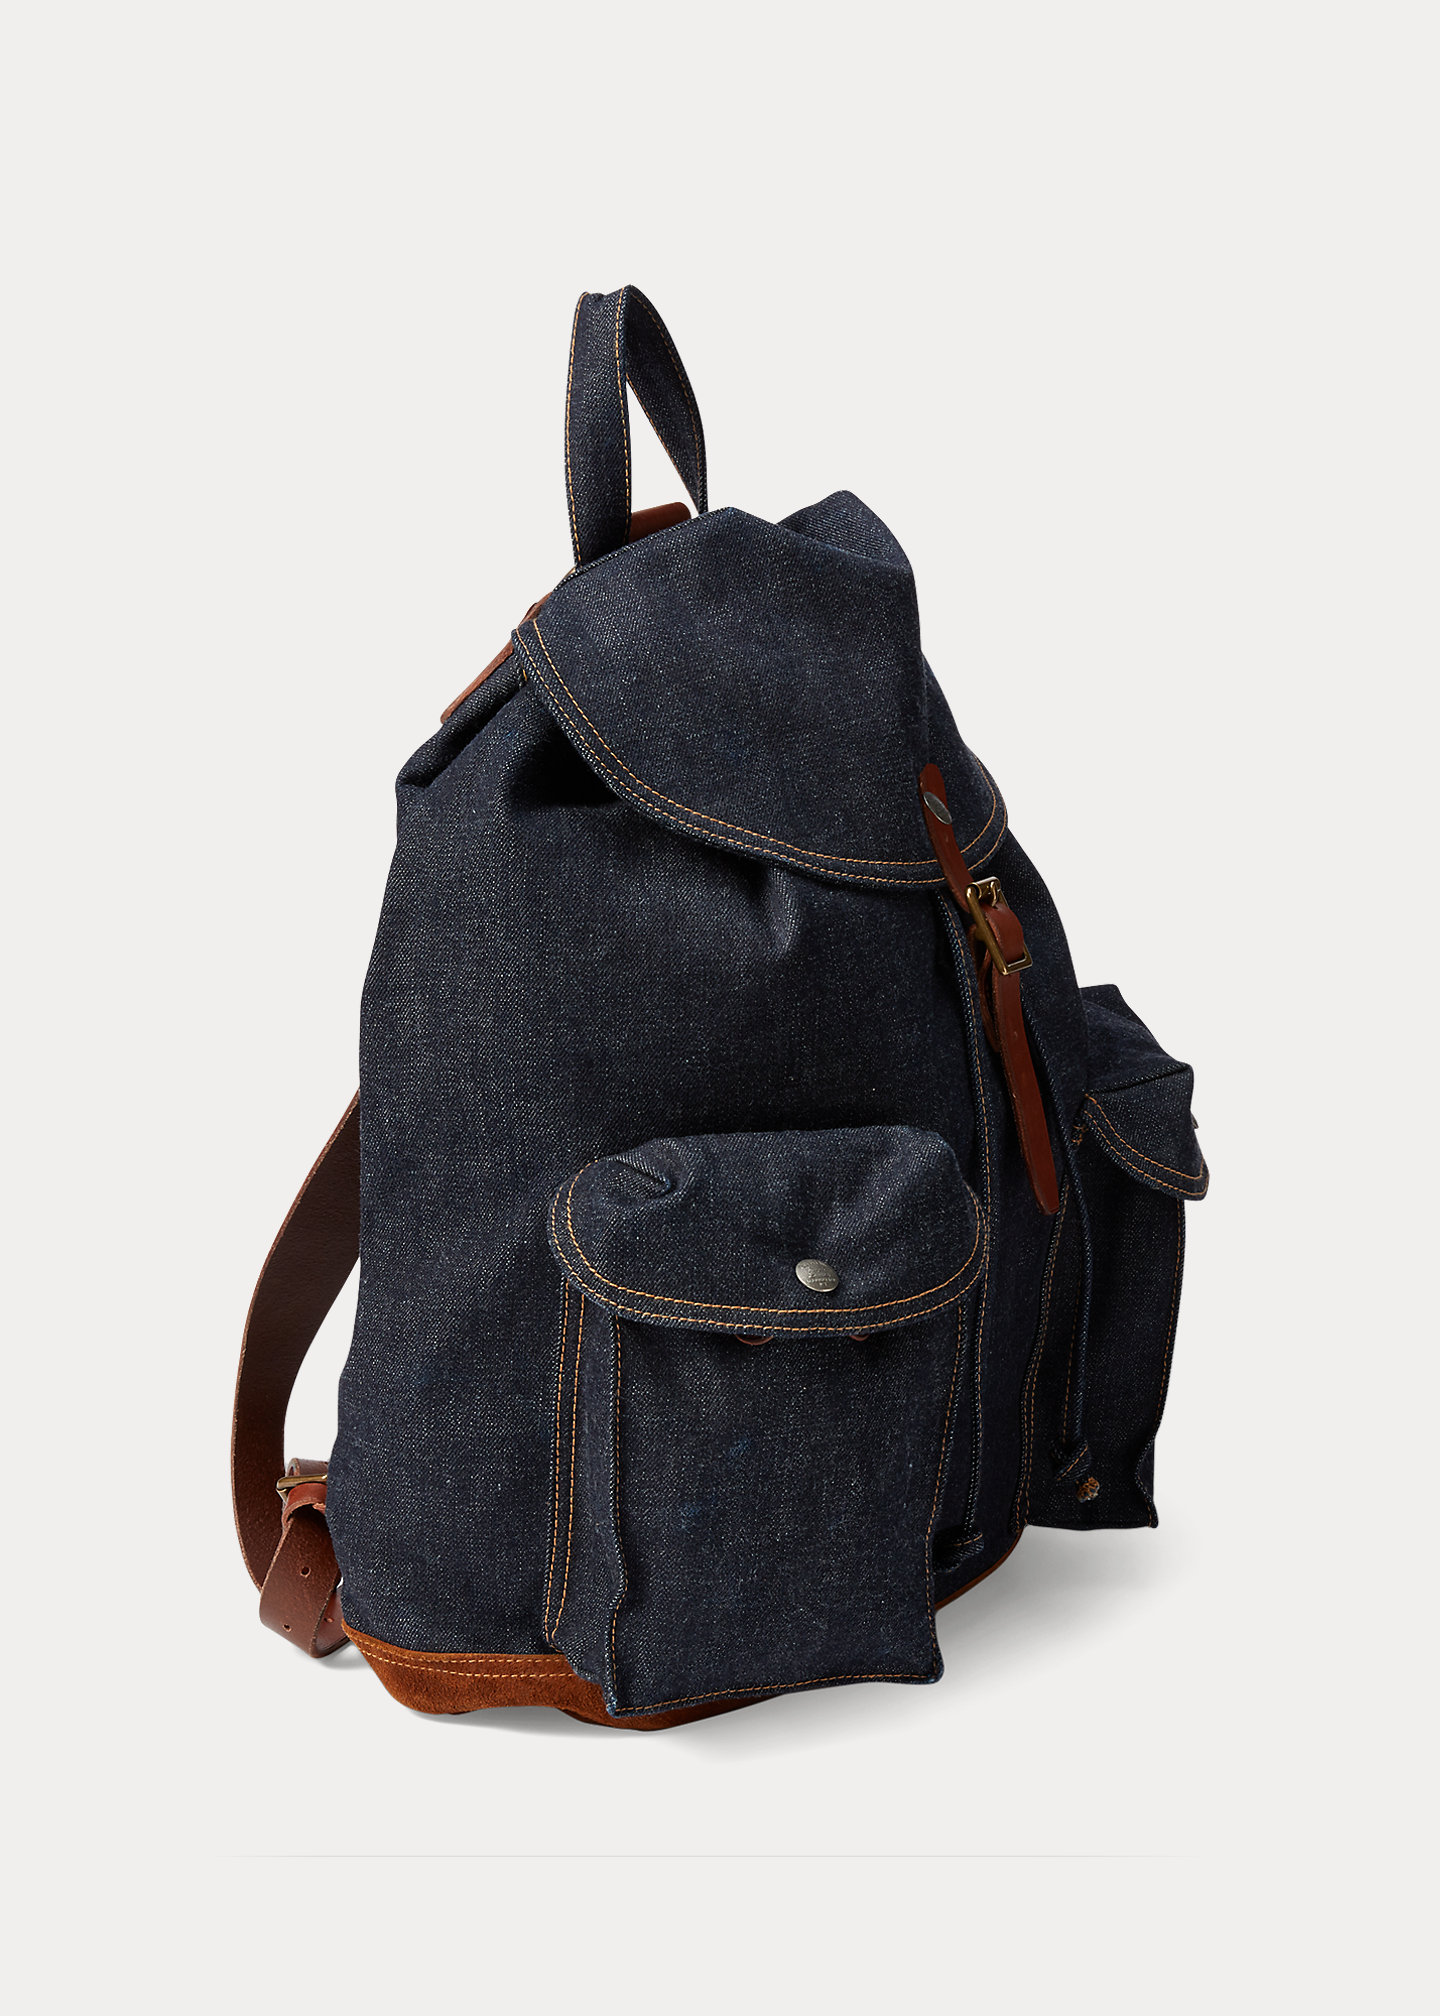 stylish handbagsDenim Rucksack-,$48.39-0